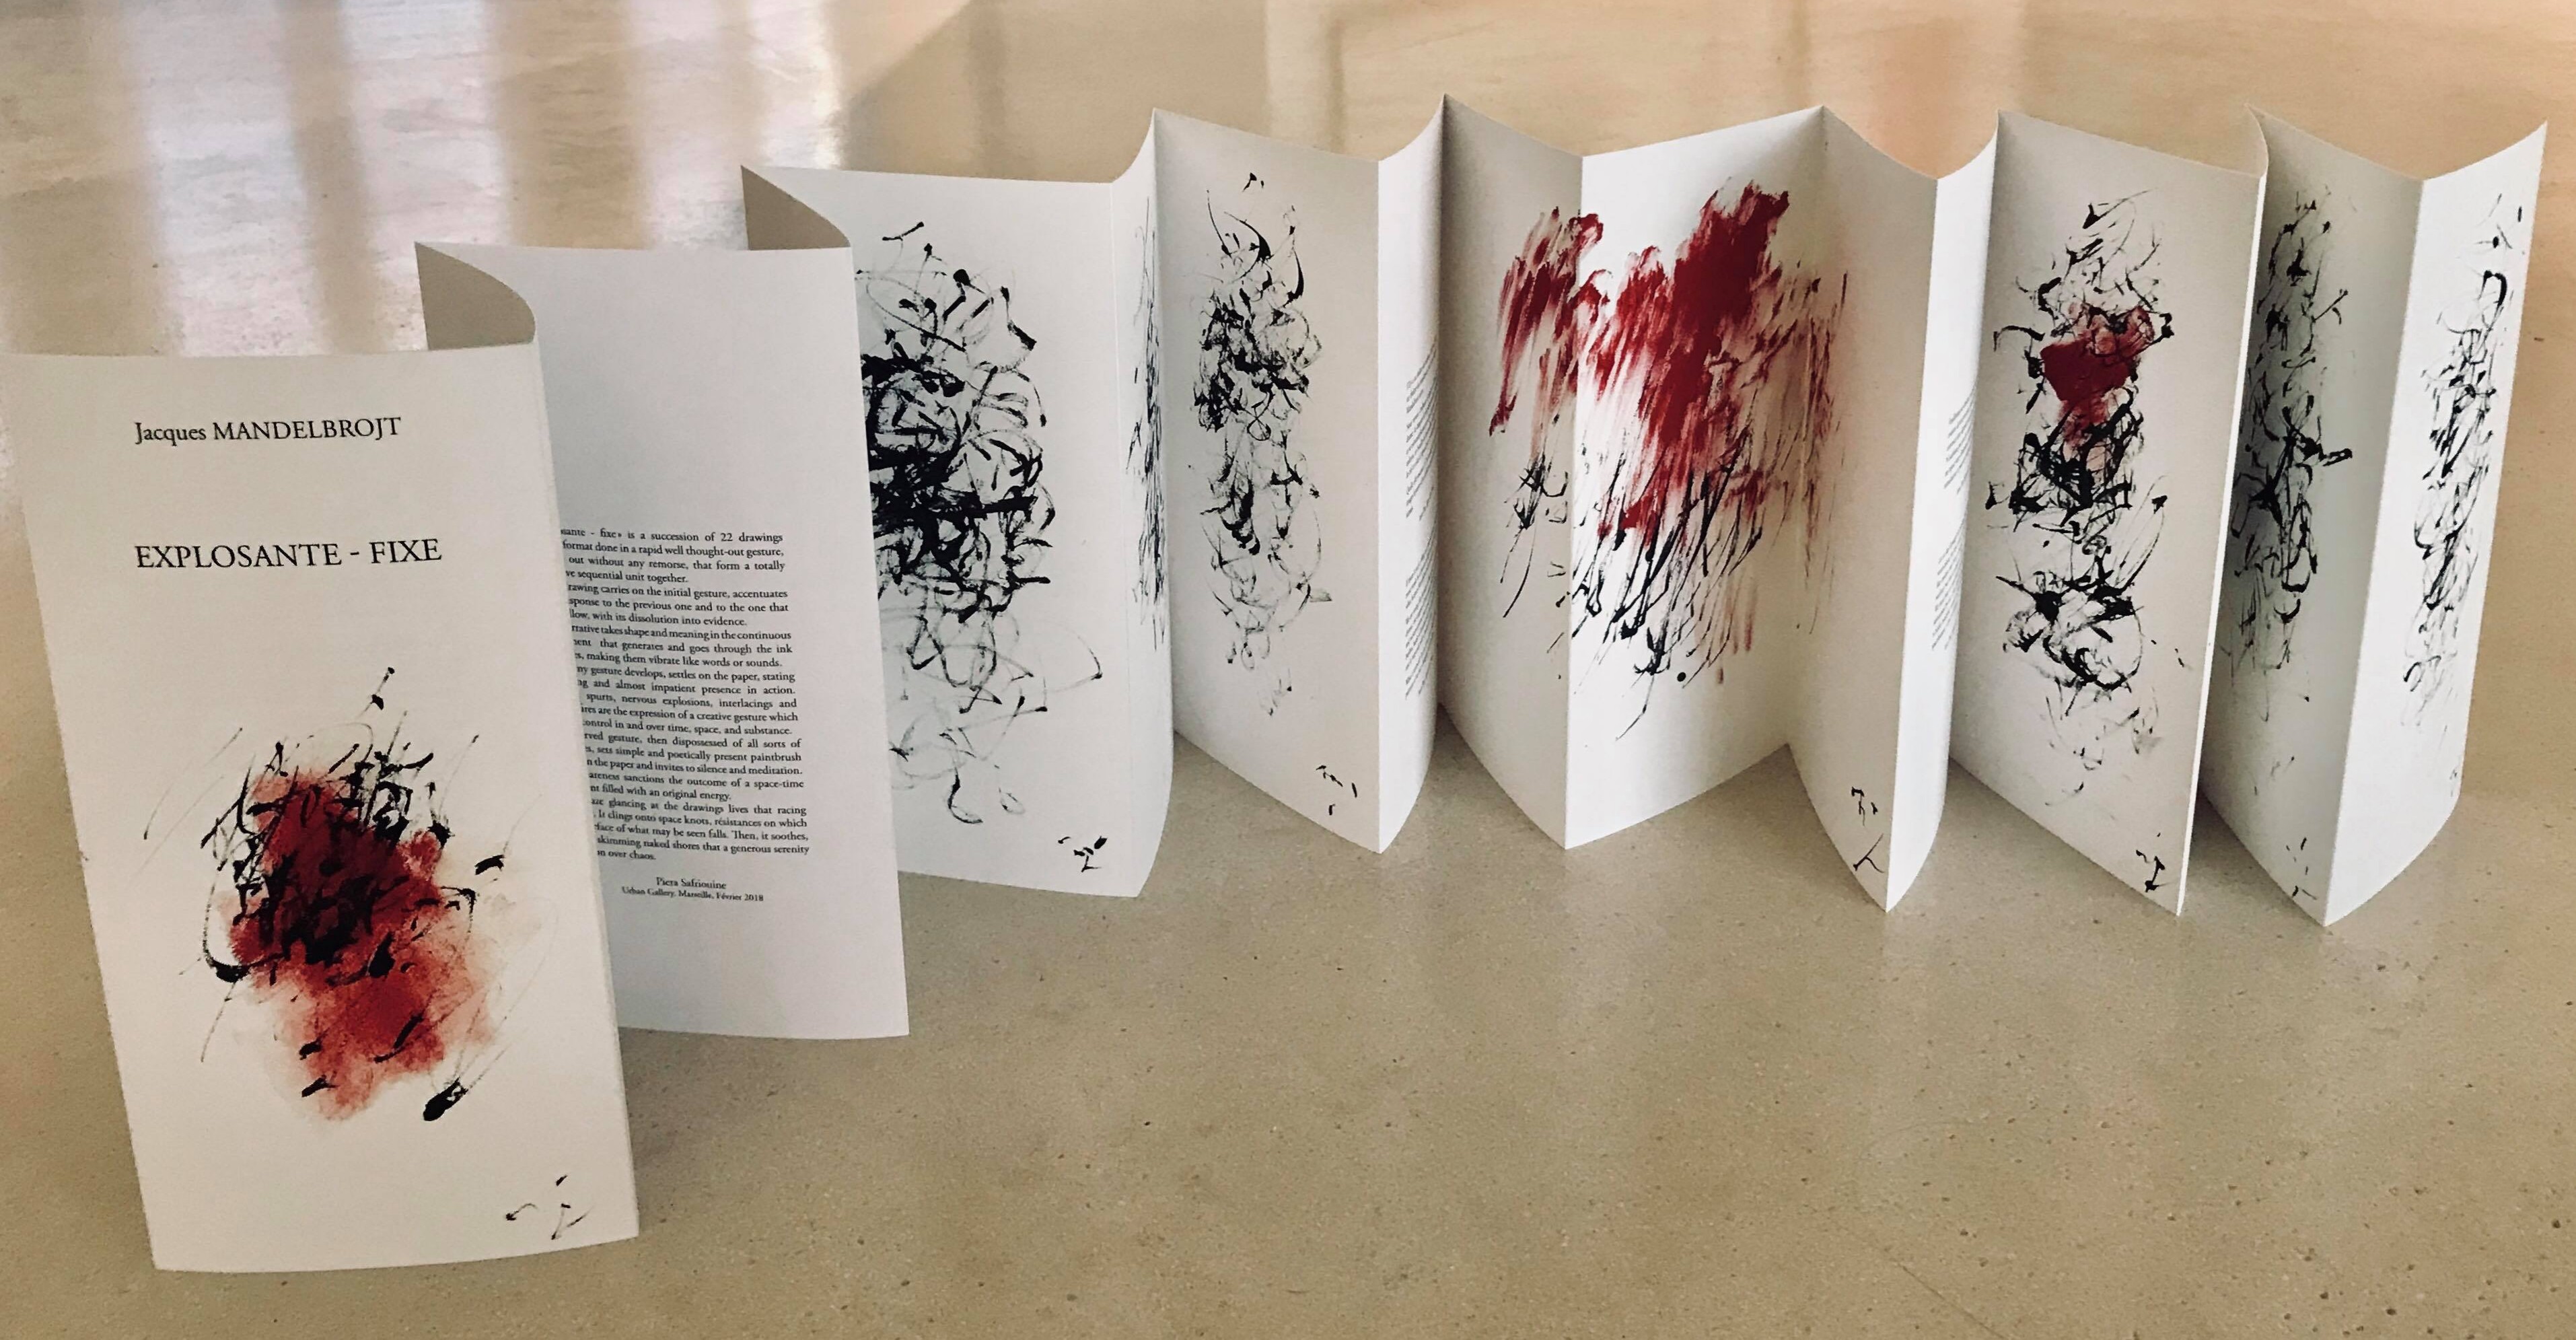 Edition d'un leporello, Explosante-fixe, 22 dessins encre sur papier, tirage offset 15X30 cm, 30ex, Edition Jean-Pierre Huguet, 2018